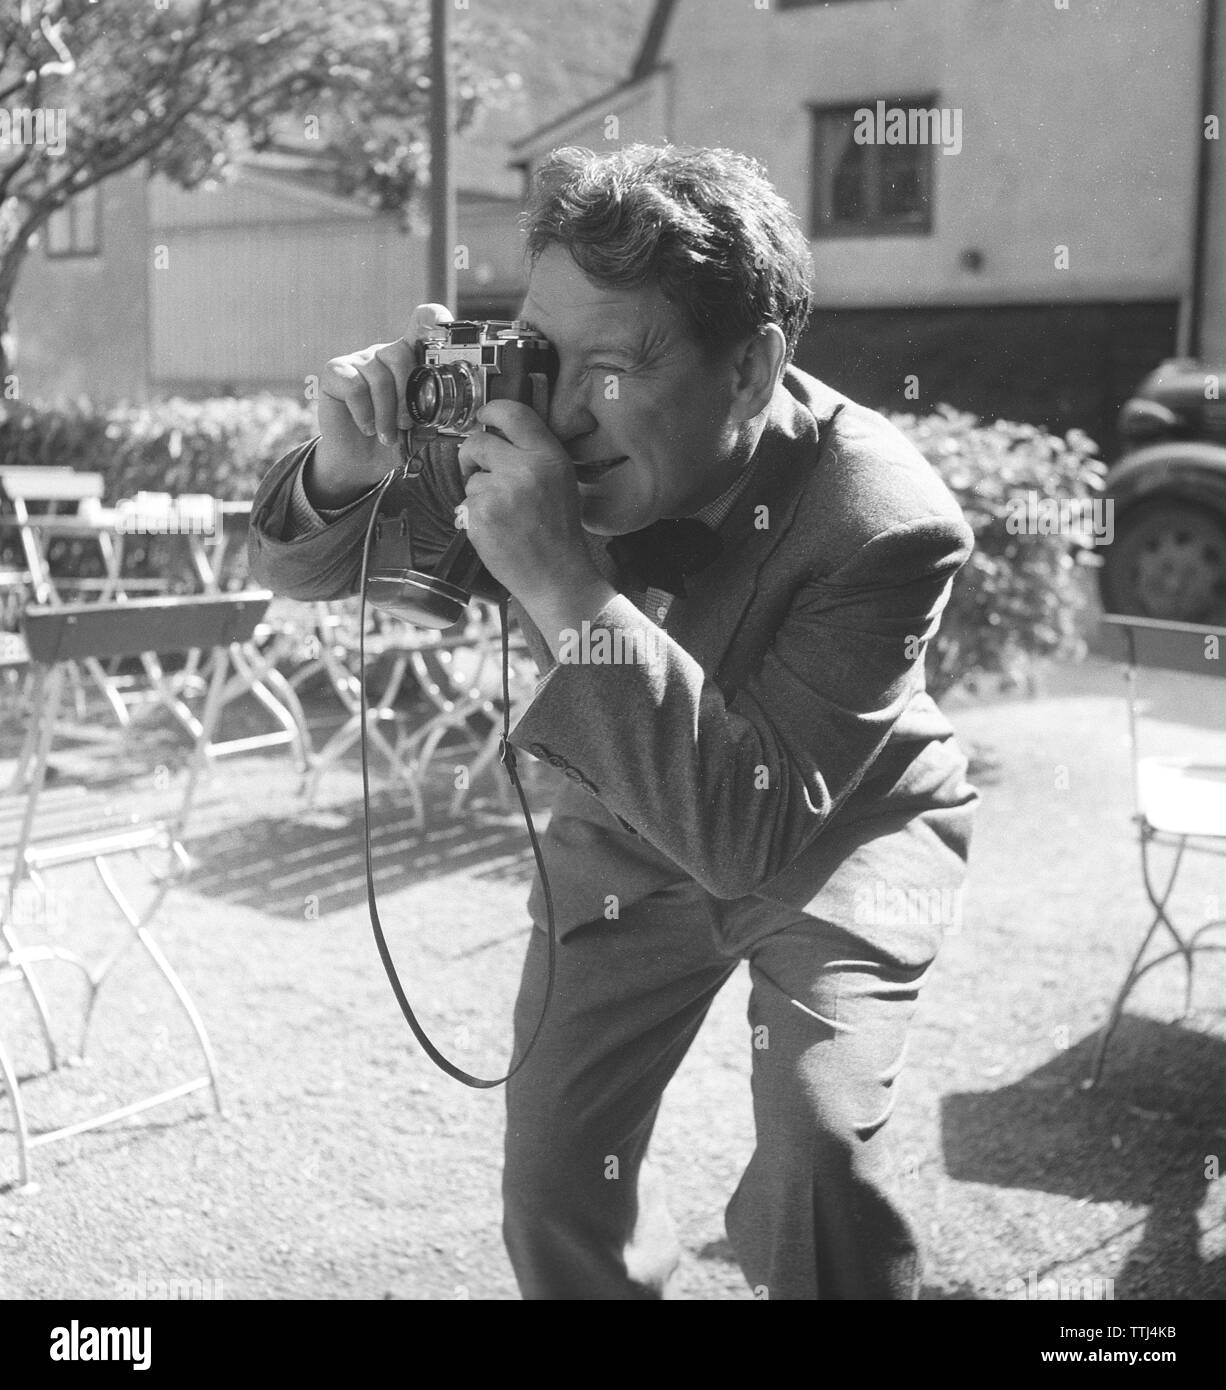 Amateurfotograf in den 1950er Jahren Ein junger Mann will mit seiner Kamera ein Foto von etwas oder jemandem machen. Er ist der us-amerikanische Schauspieler Burgess Meredith, der ein Foto macht. Schweden 1954. Foto Kristoffersson Ref. BF78-1 Stockfoto